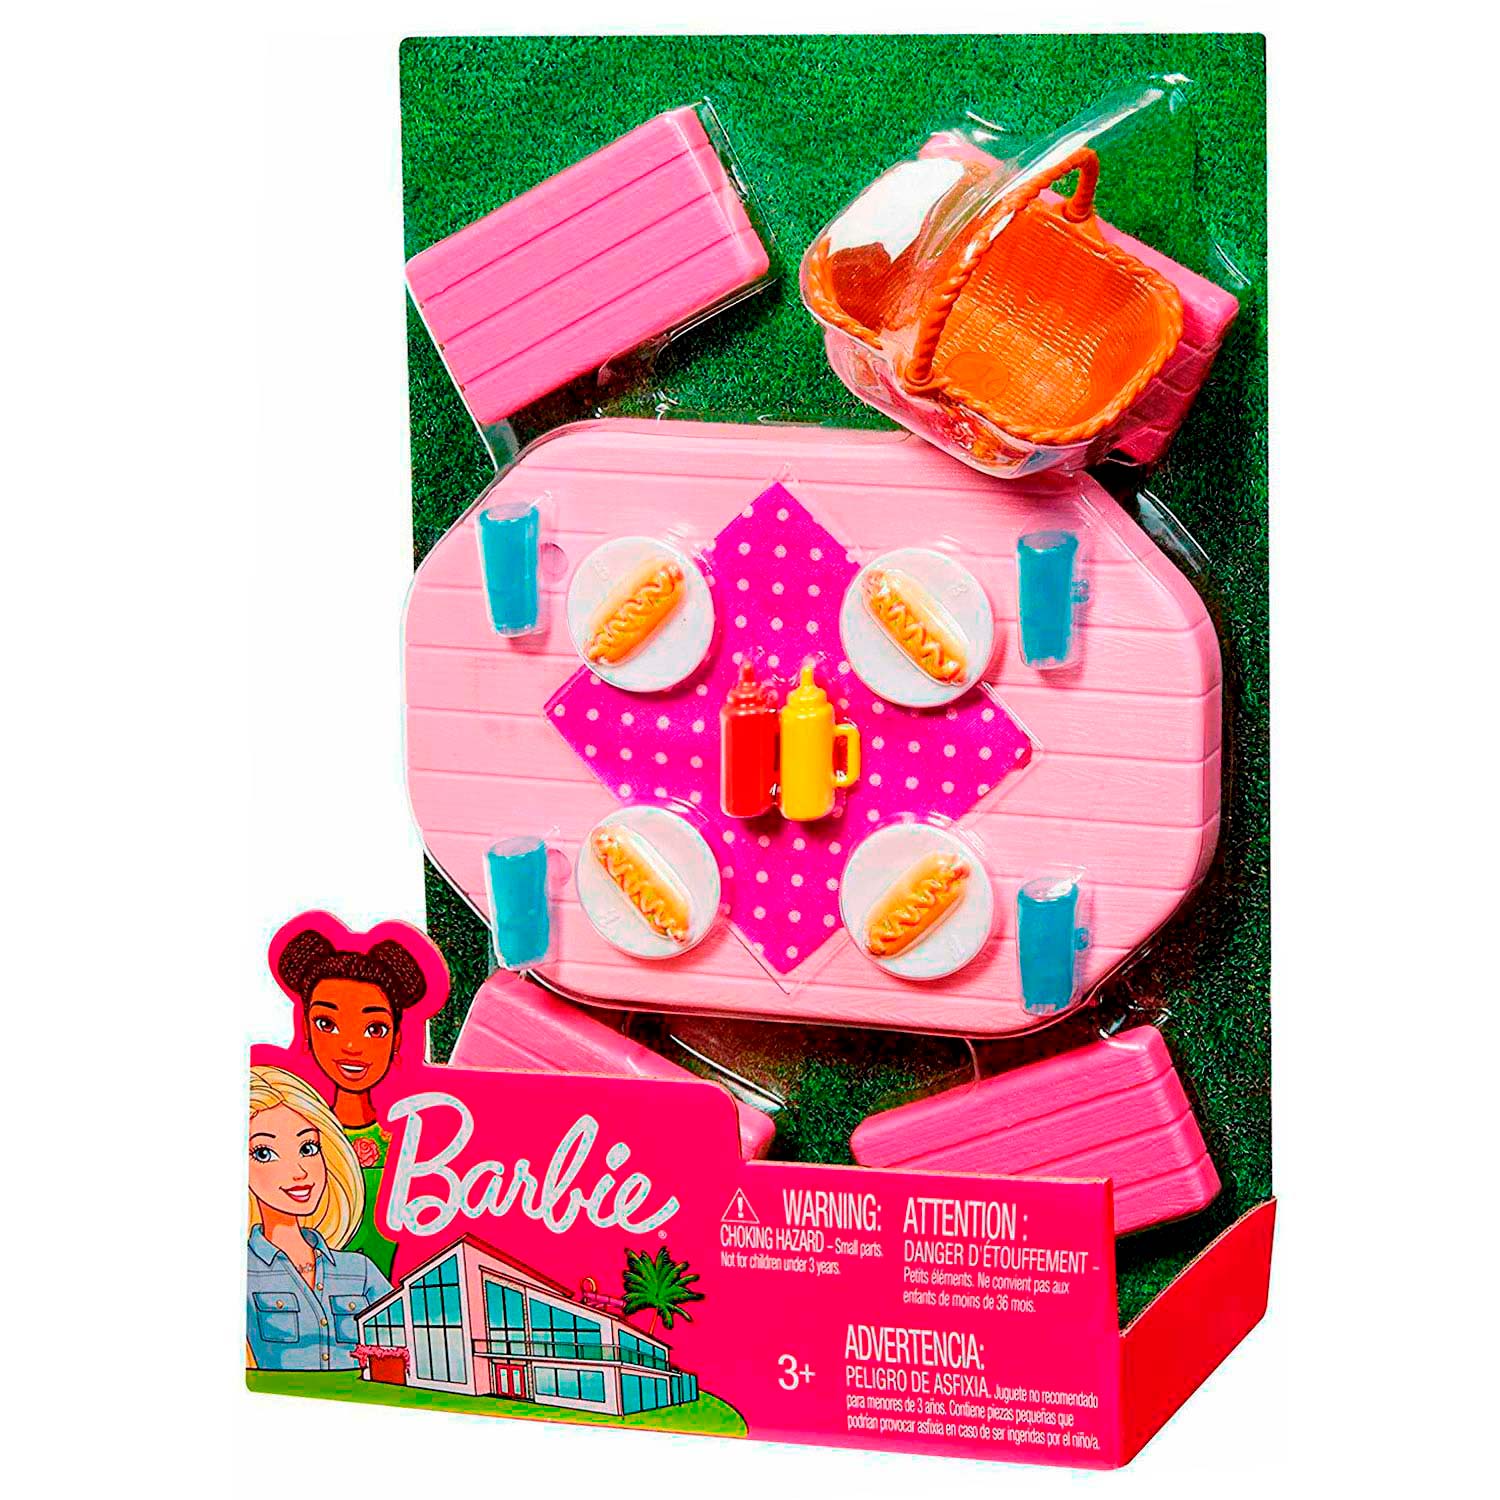 Barbie Meubels & Accessoires - Picknicktafel